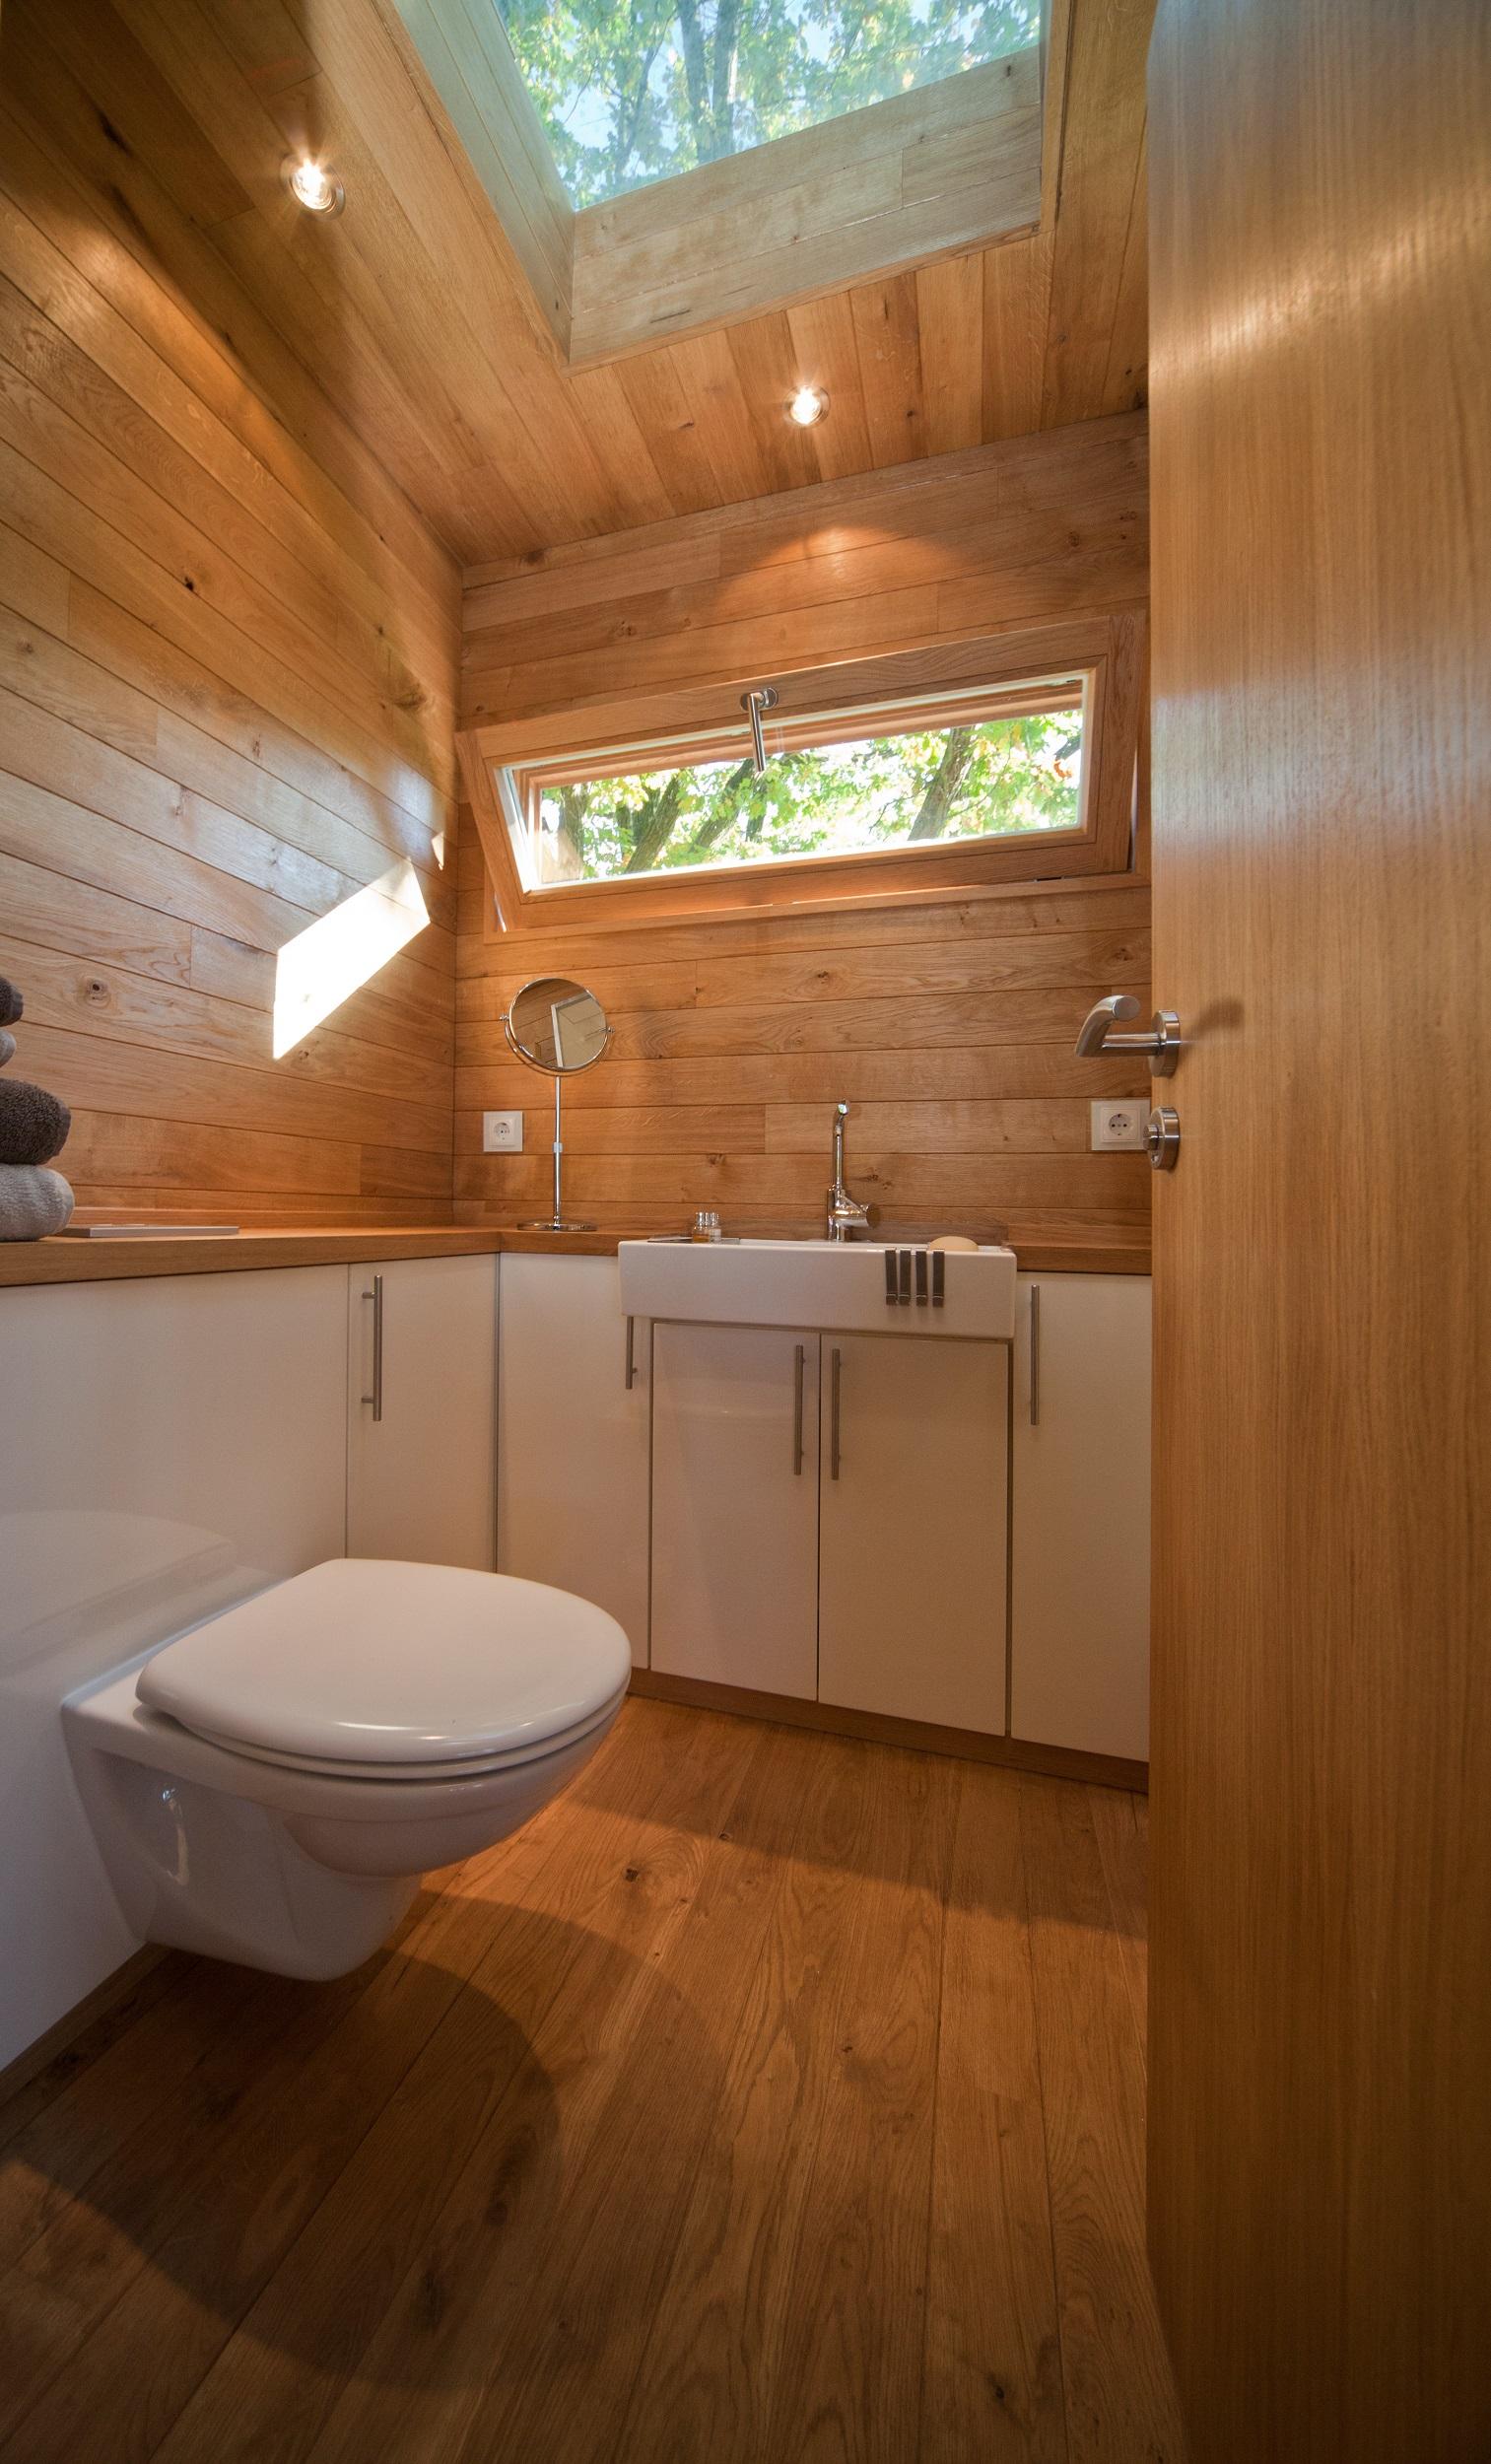 Natürliches Badezimmer im Baumhaus #baumhaus #holzverkleidung ©baumraum / Markus Bollen